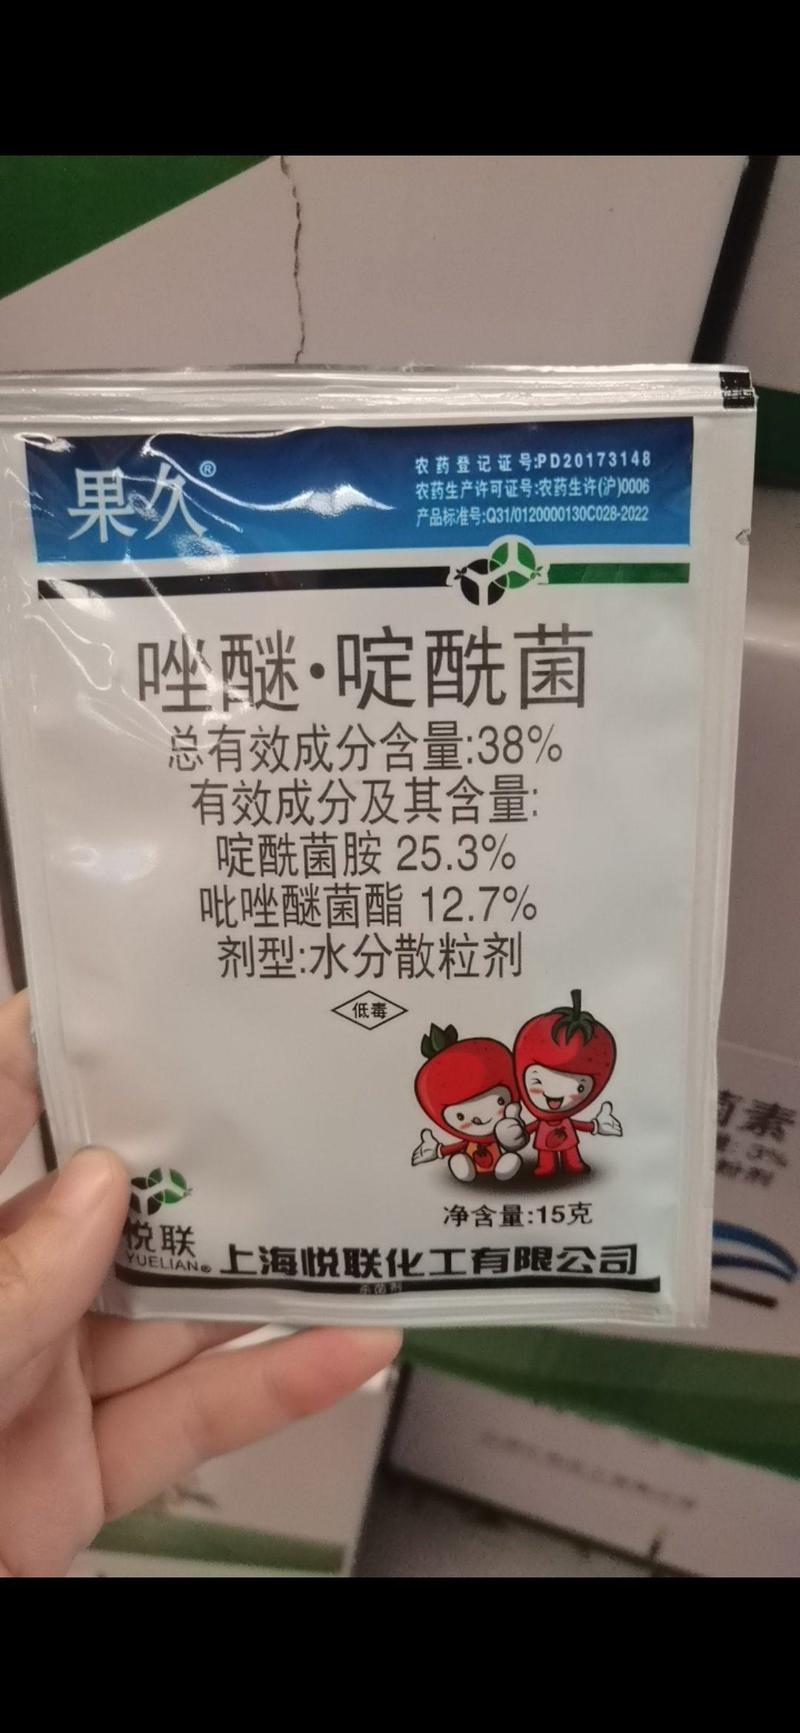 上海悦联果久38%吡唑醚菌酯啶酰菌草莓灰霉病